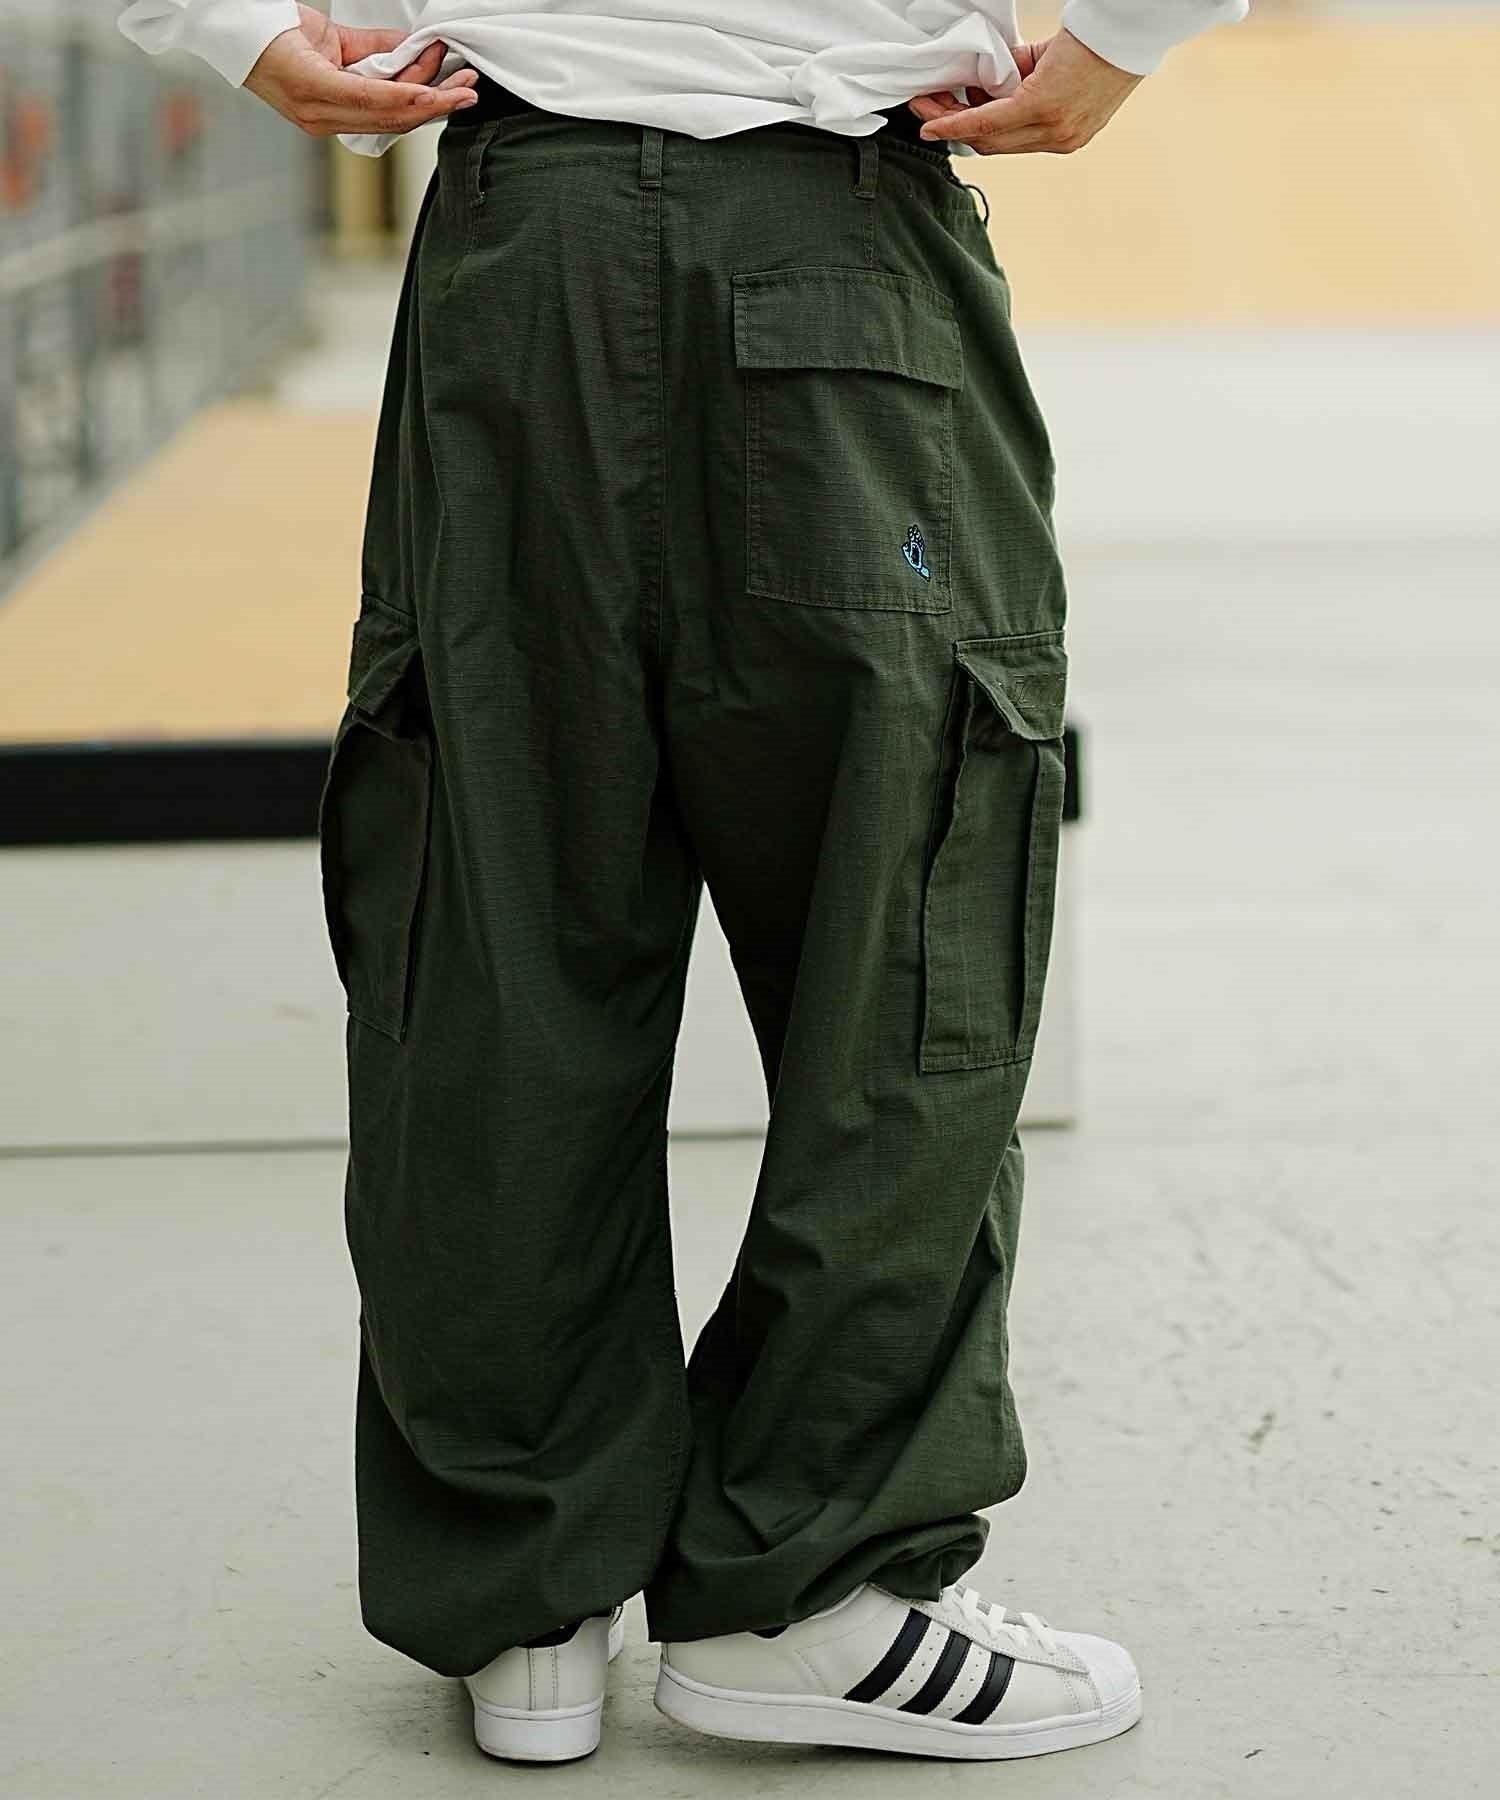 【ムラサキスポーツ限定】SANTACRUZ/サンタクルーズ Screaming Hand Cargo Pants メンズ パンツ 502233502(ARMY-M)